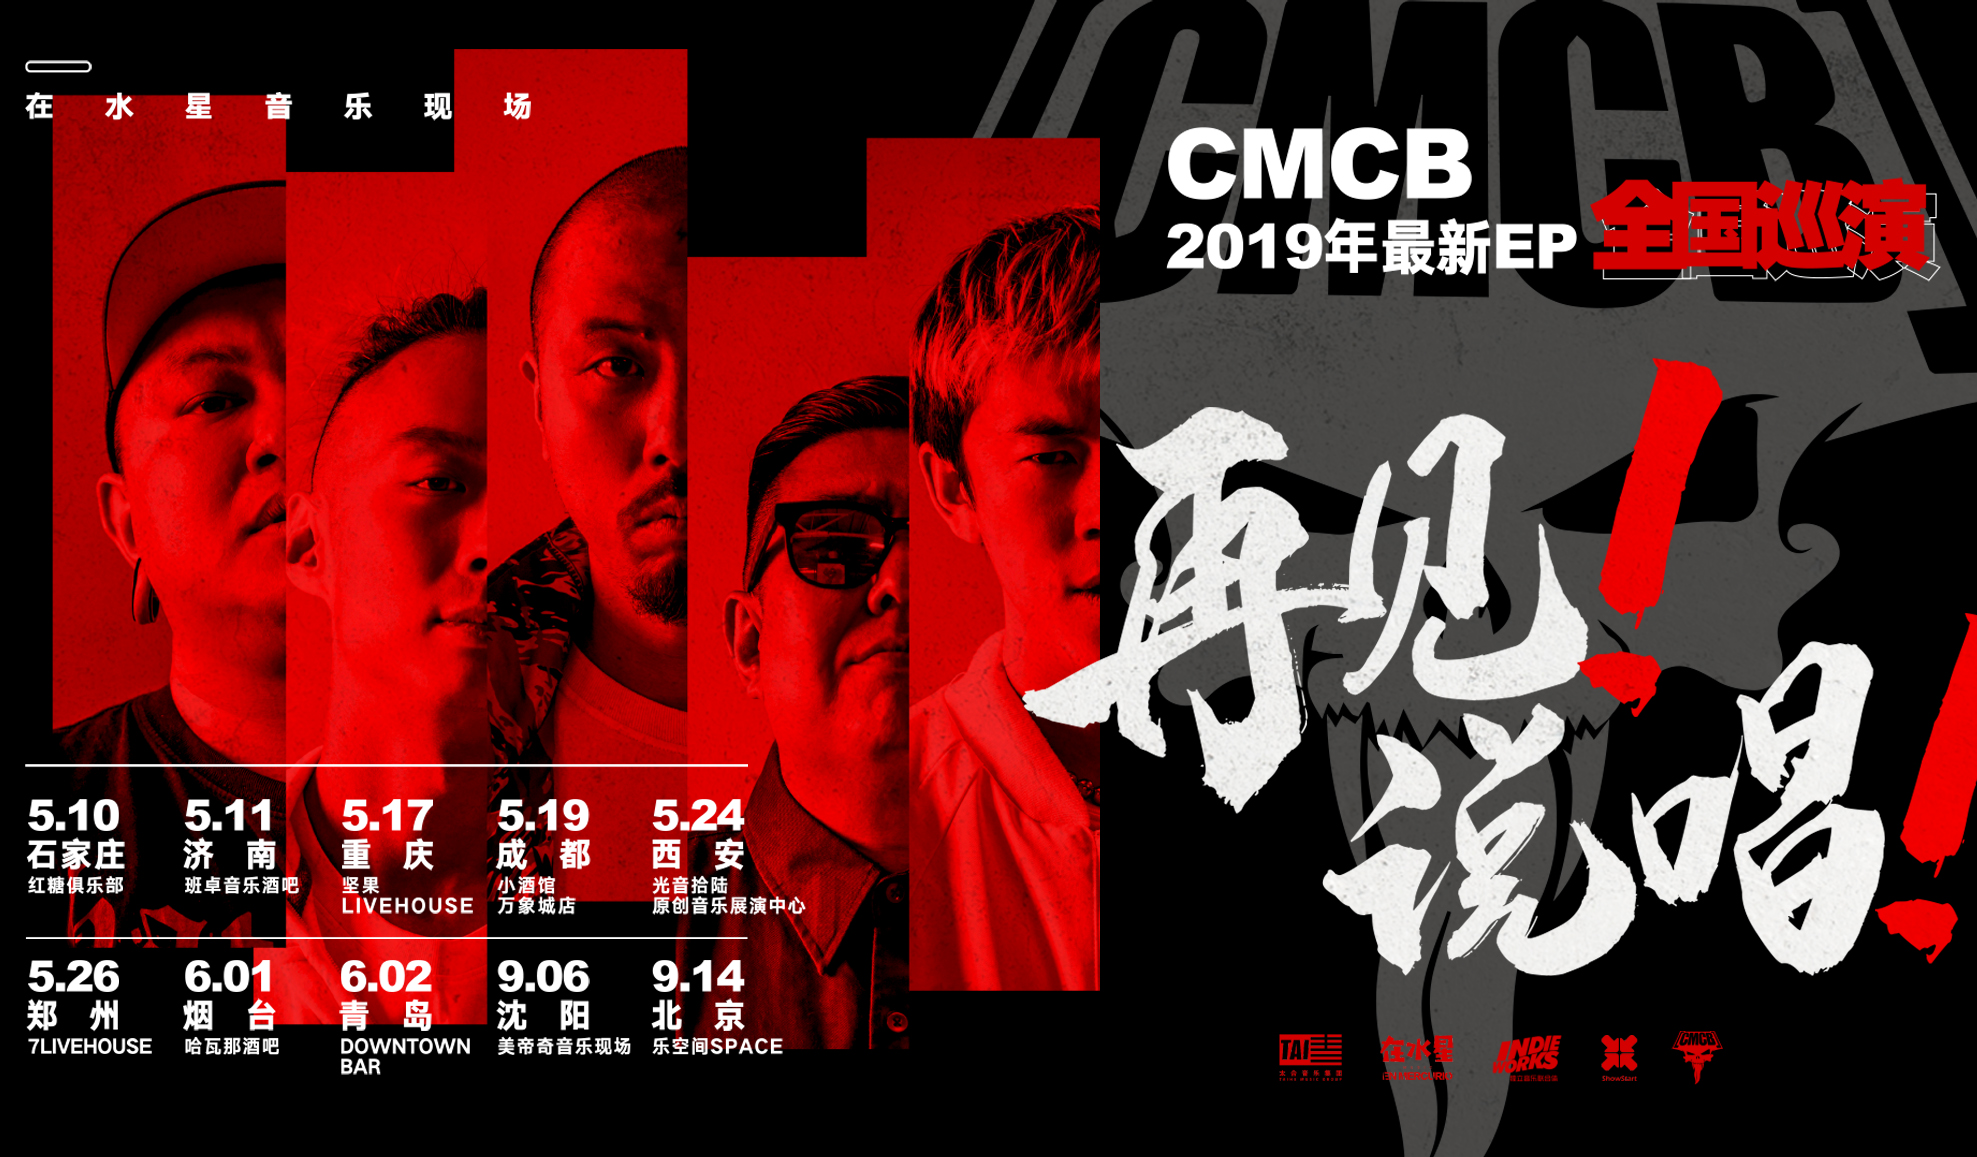 抢票丨CMCB乐队2019新EP《再见!说唱!》 巡演西安站免费抢票